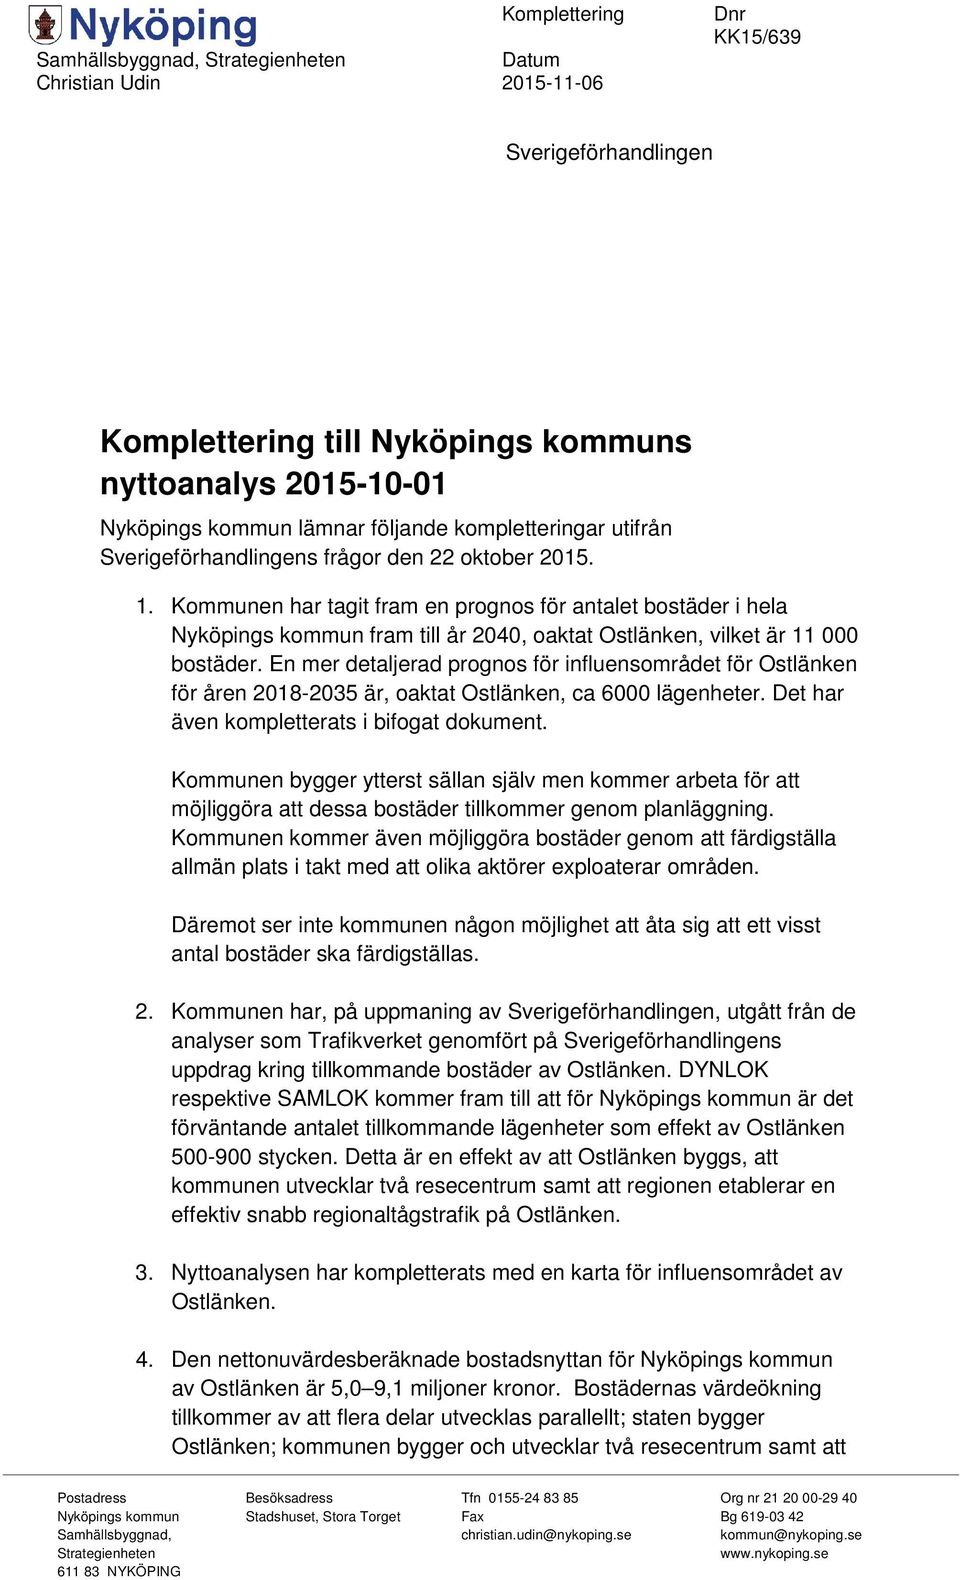 Kommunen har tagit fram en prognos för antalet bostäder i hela Nyköpings kommun fram till år 2040, oaktat Ostlänken, vilket är 11 000 bostäder.